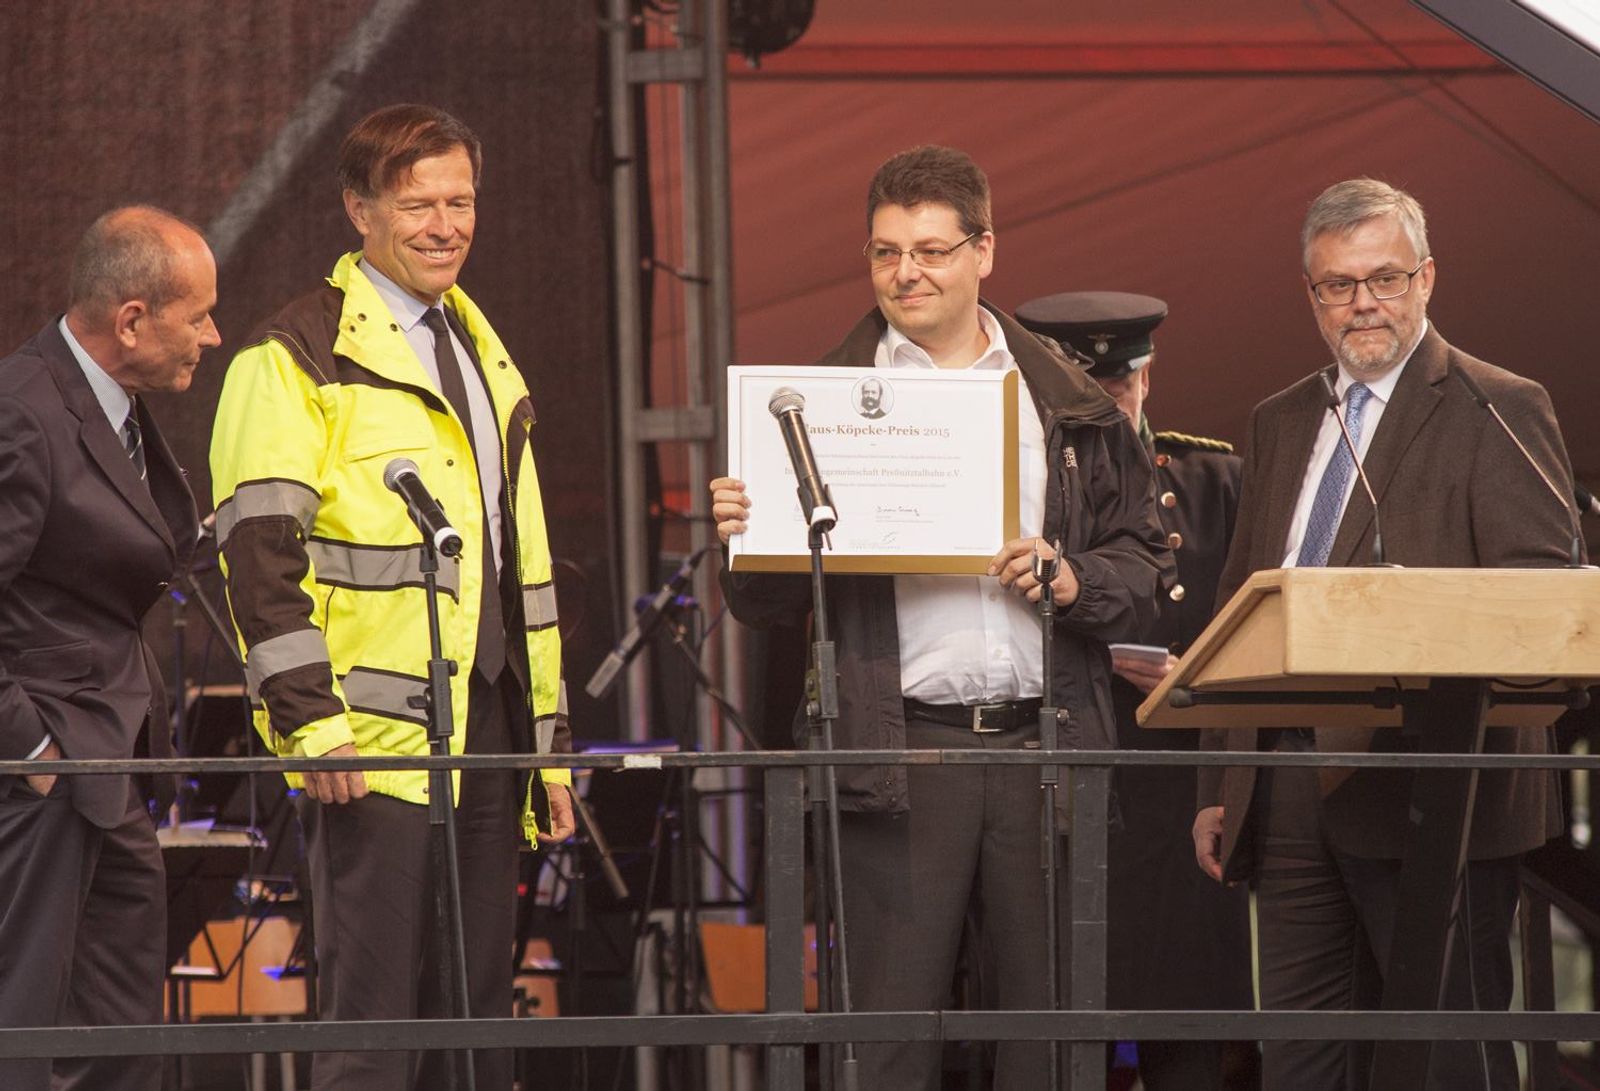 Vereinsgeschäftsführer Gerald Seifert nimmt von Bodo Finger und Matthias Rösler sowie Dr. Andreas Winkler die Urkunde für den "Claus-Köpcke-Preis 2015" entgegen.